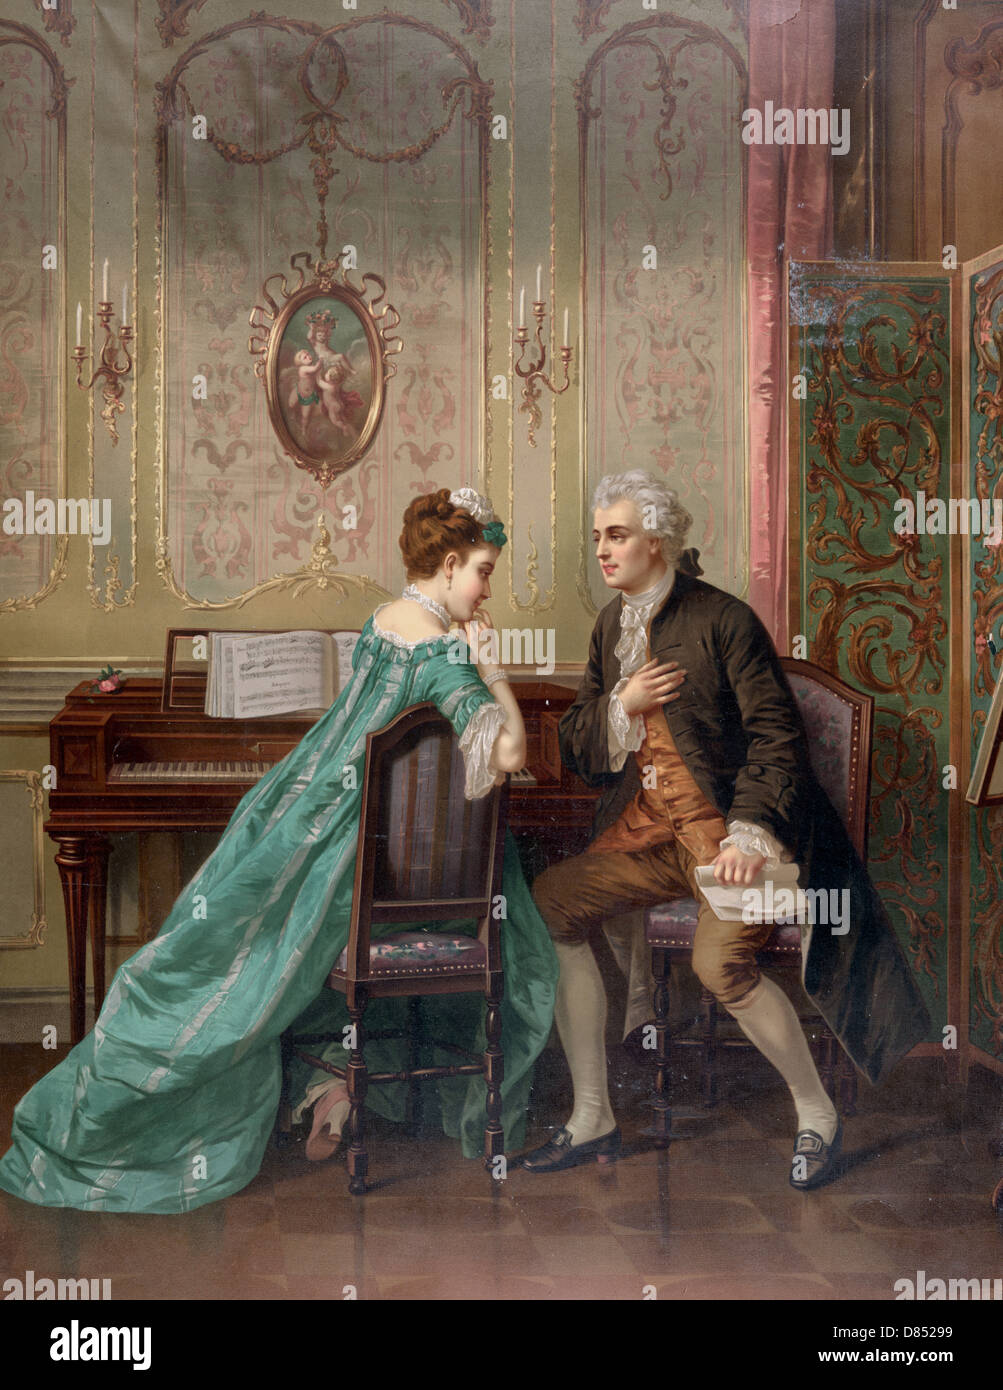 La proposition - homme propose de femme assise à l'instrument à clavier, vers 1873 Banque D'Images